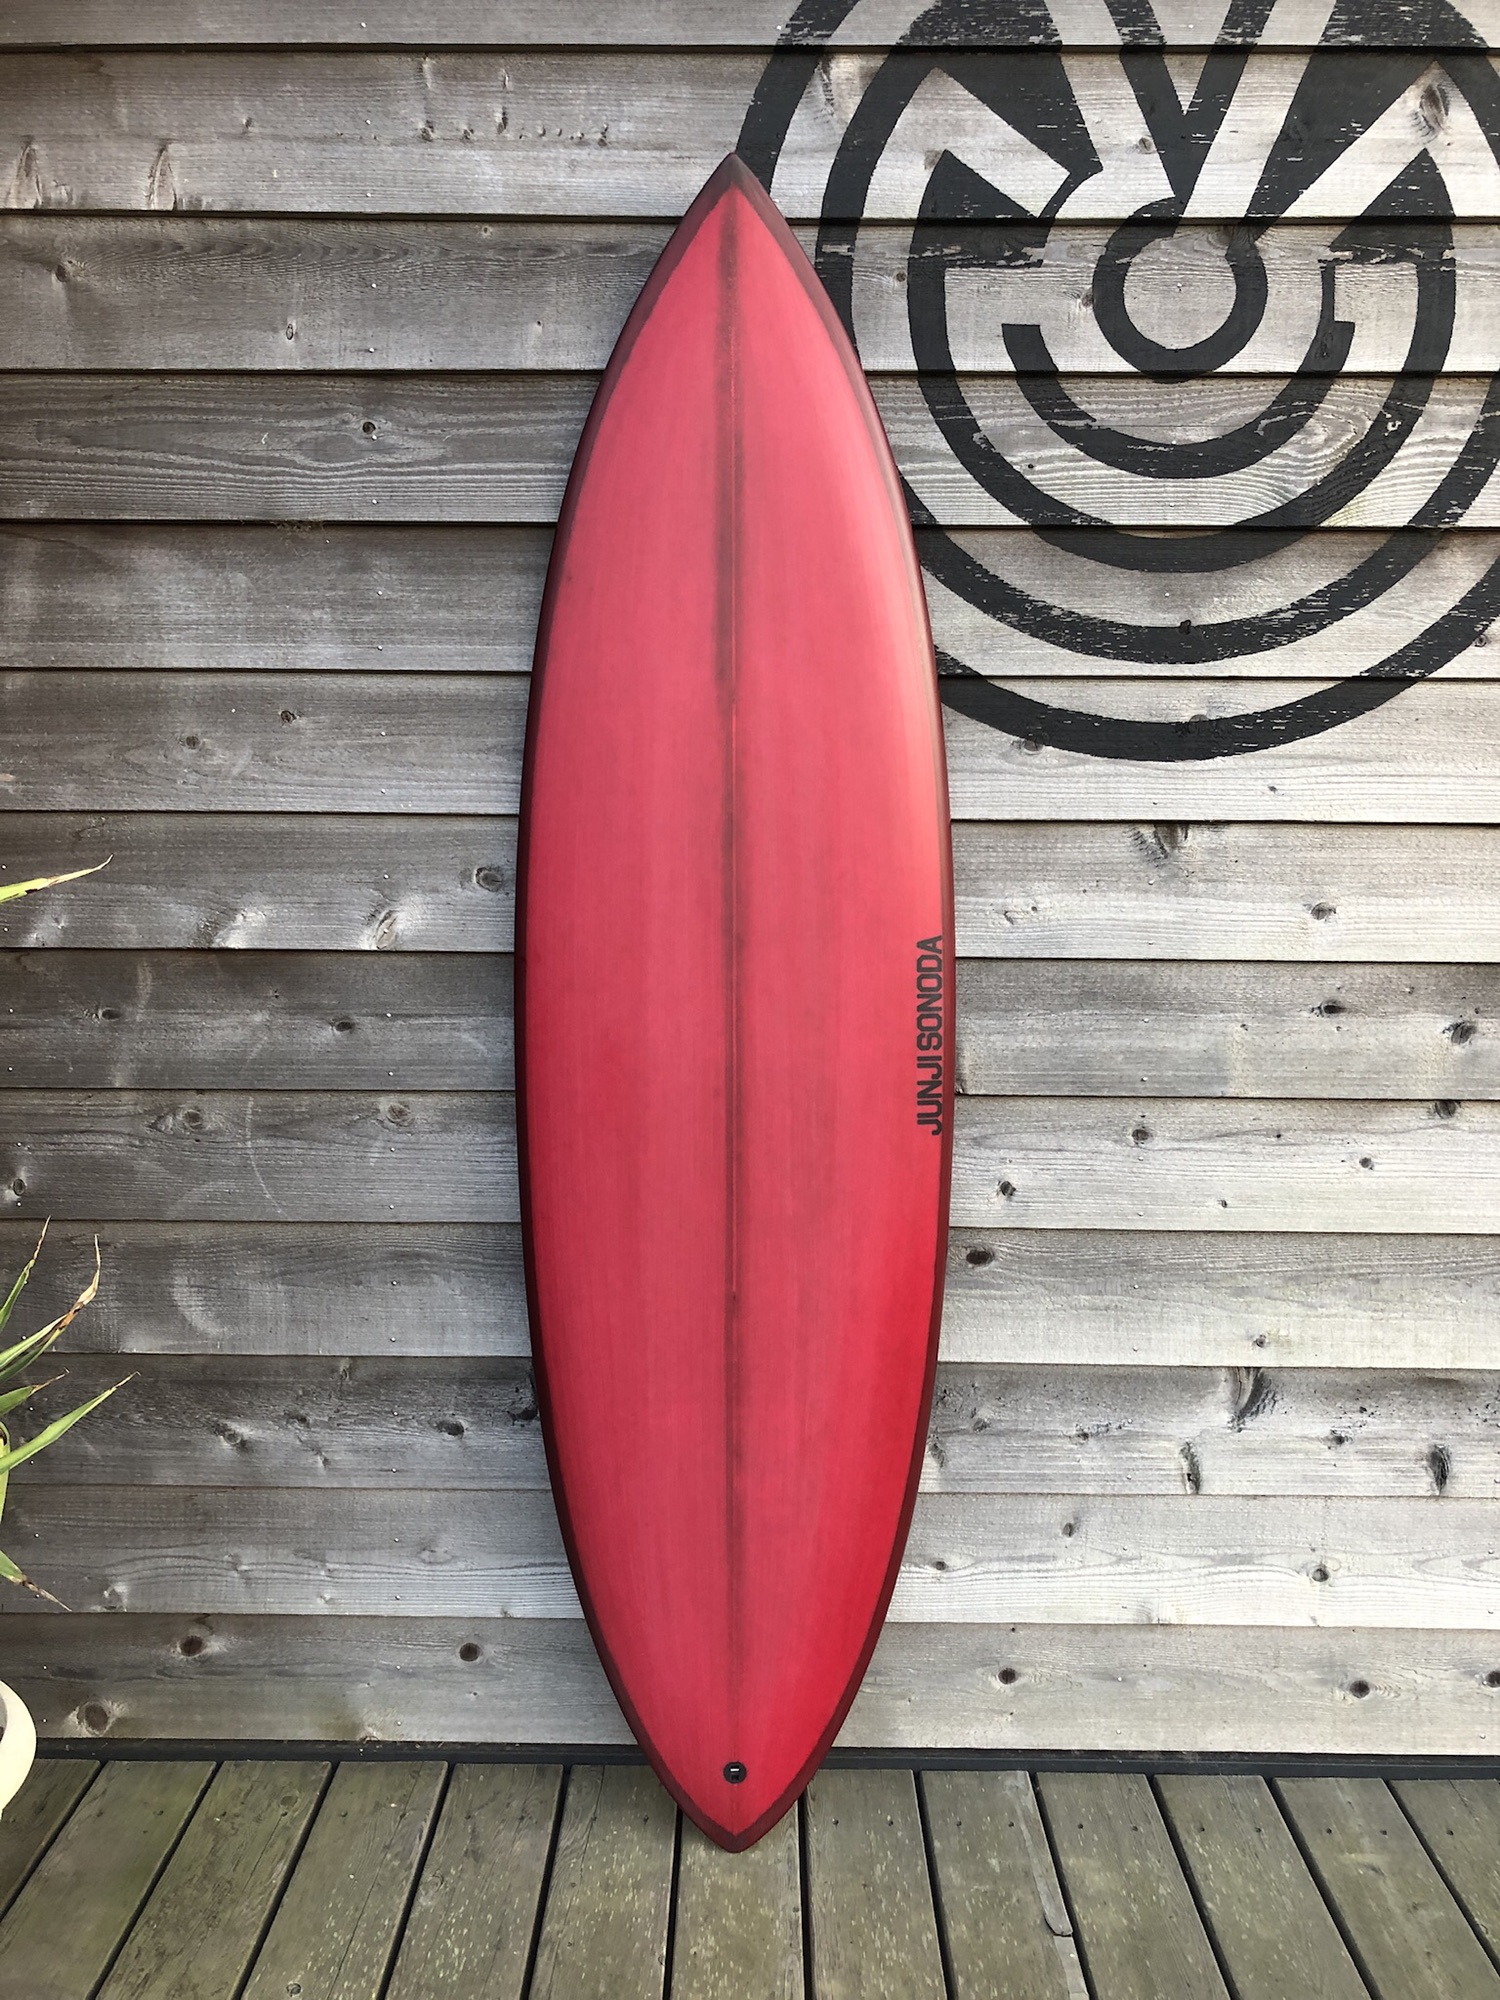 JUNJI SONODA SURFBOARD | STRAY SURF BLOG